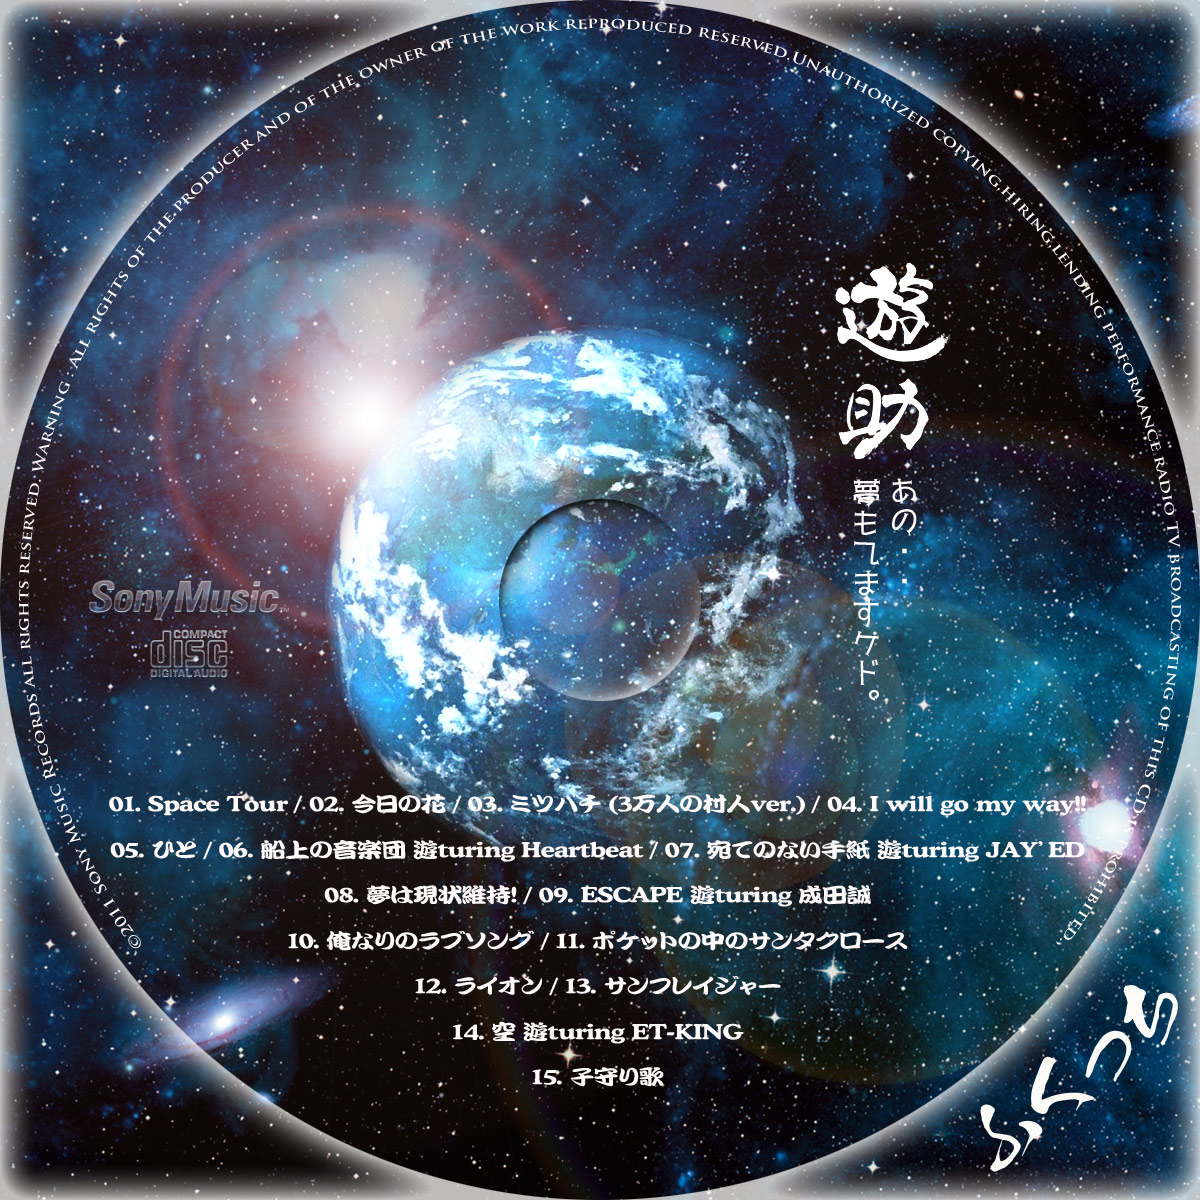 ふくっちの音楽CD/DVDカスタムレーベル